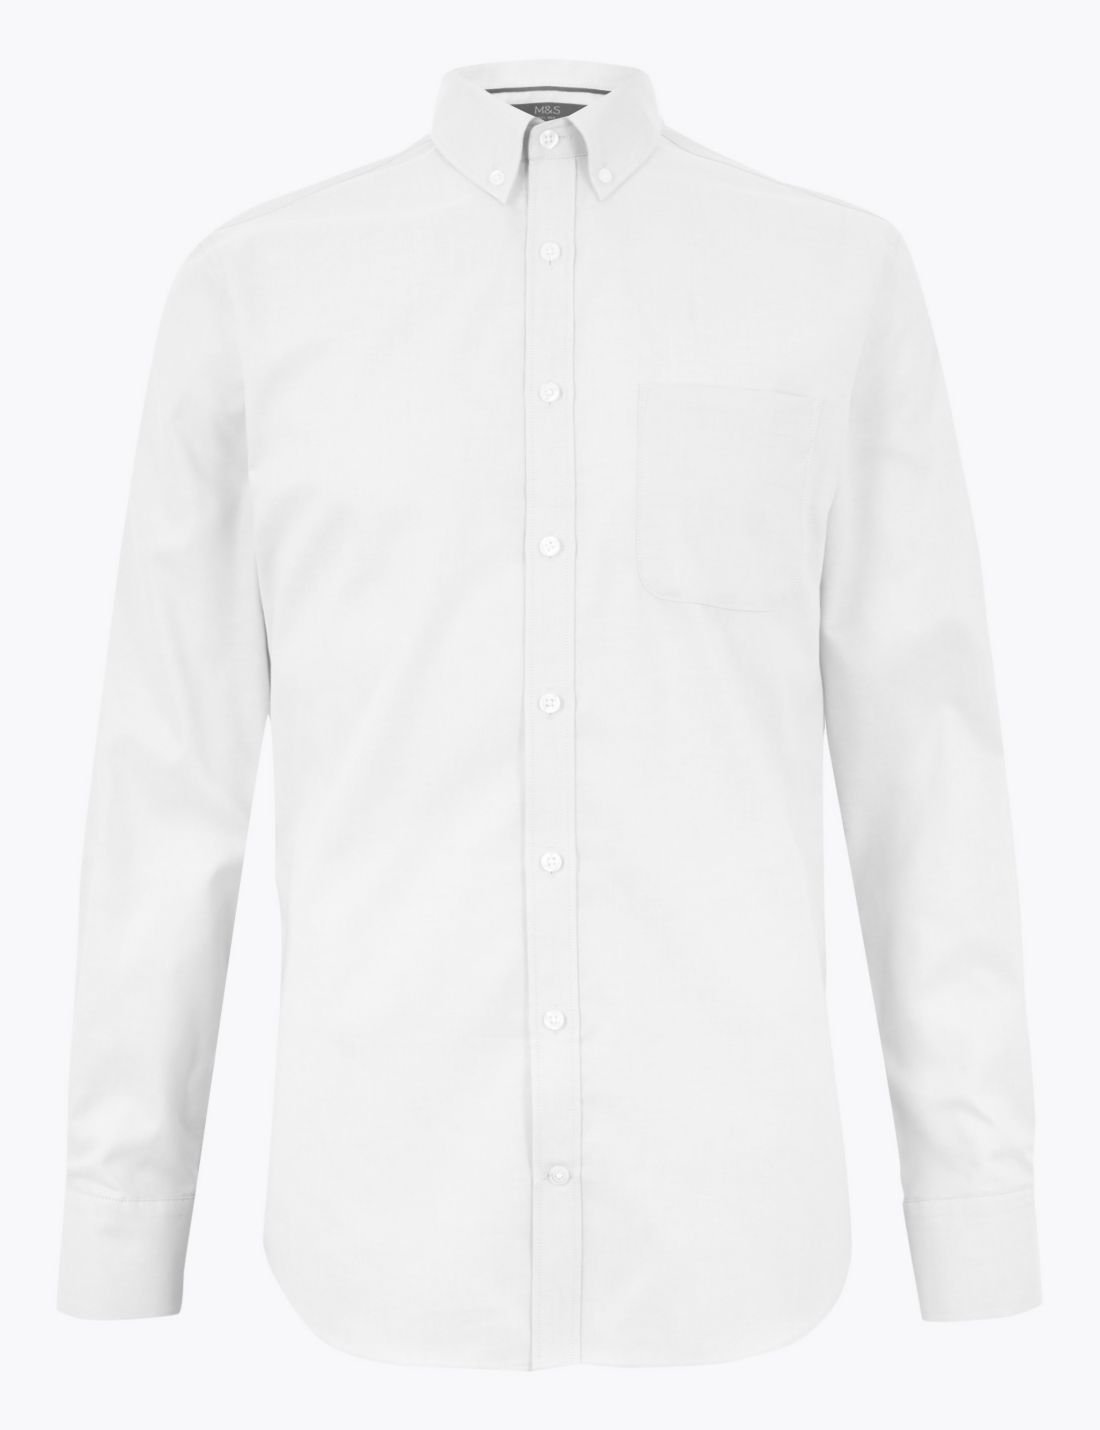 Saf Pamuklu Tailored Fit Oxford Gömlek